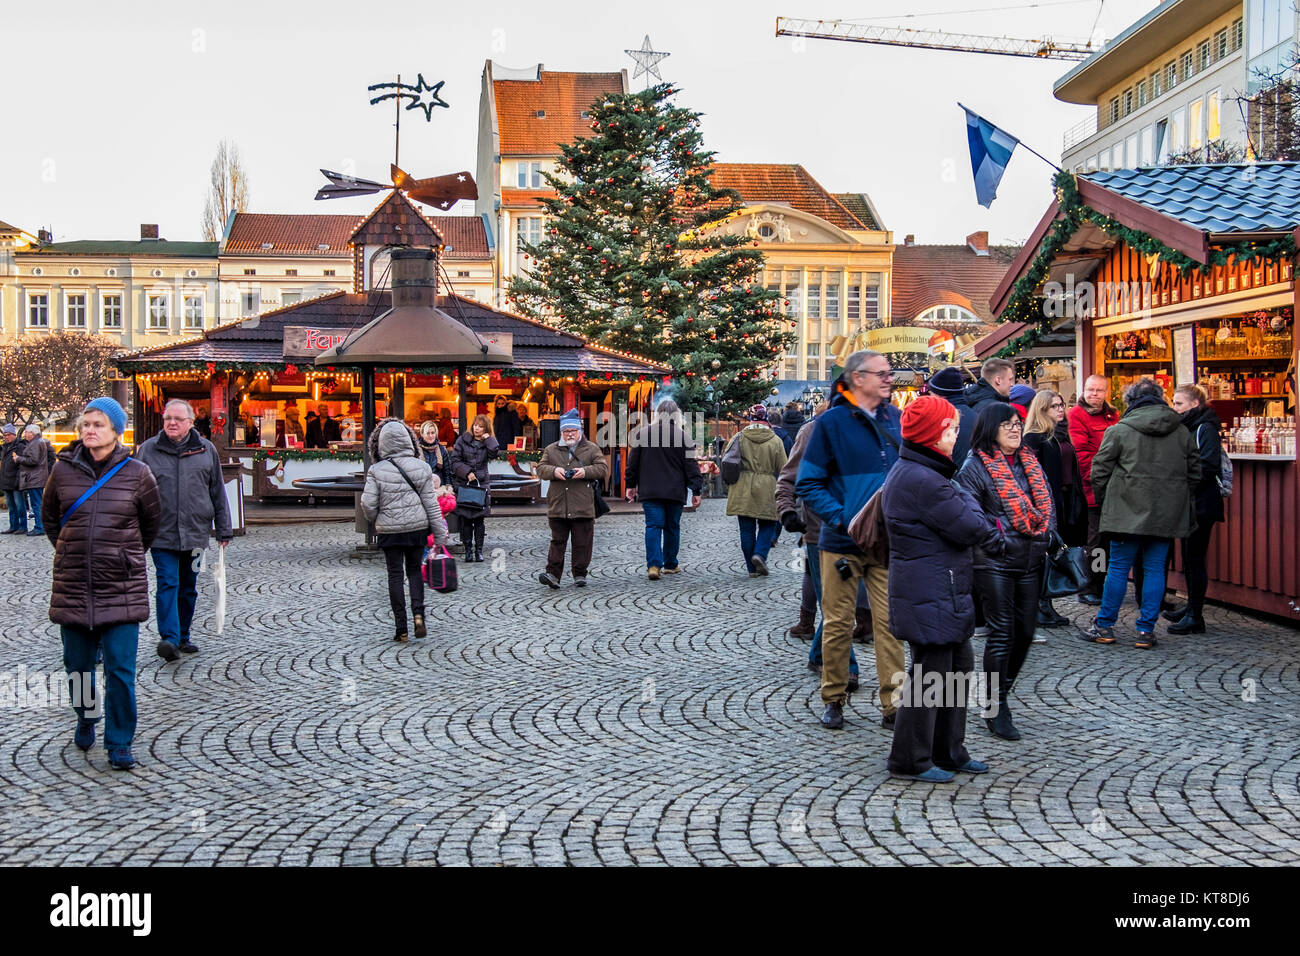 Berlin Spandau.People enjoy typical Traditional German Christmas ...